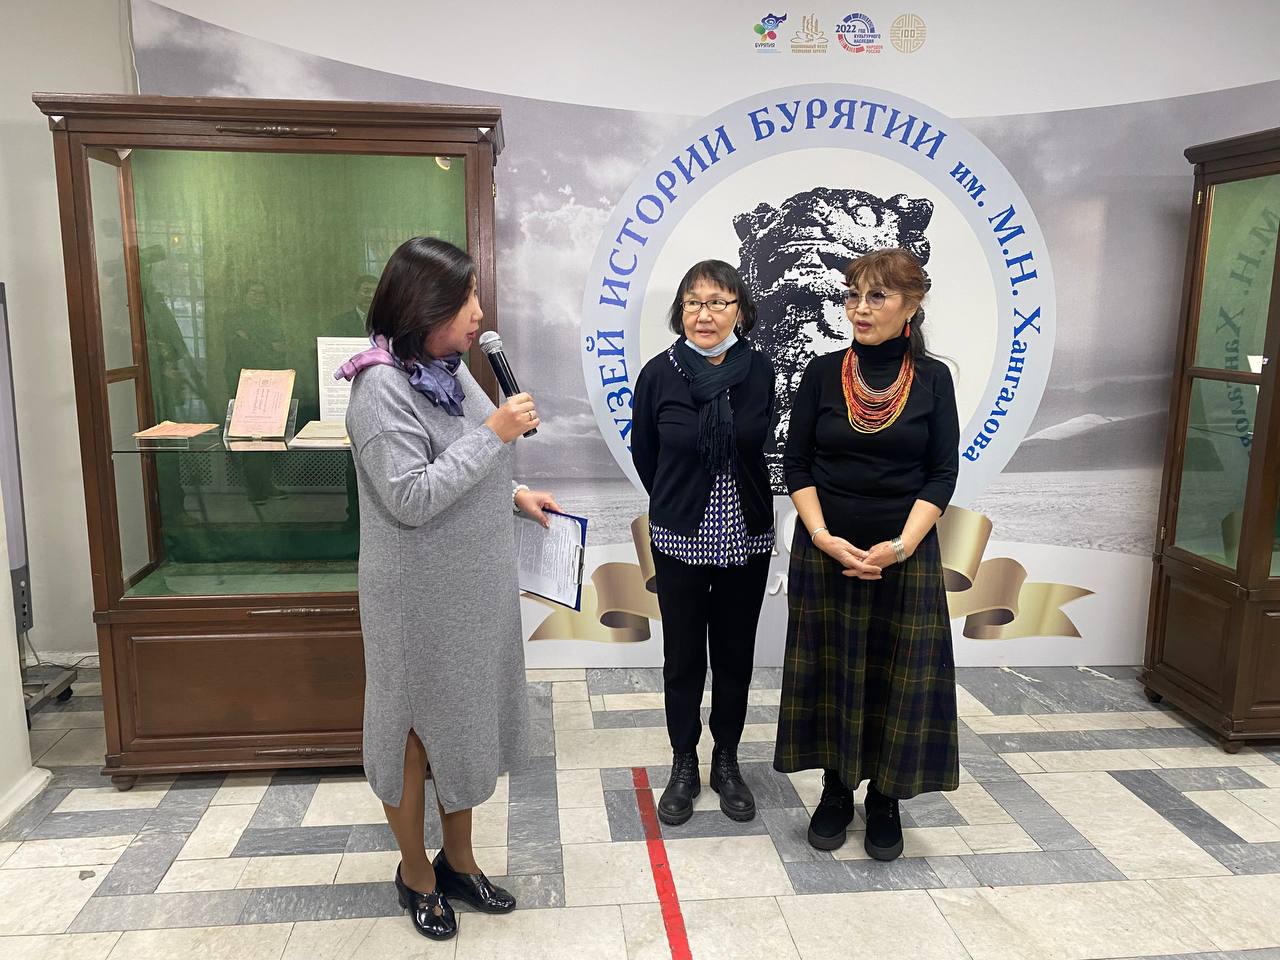 В музее открылась необычная выставка текстиля и керамики